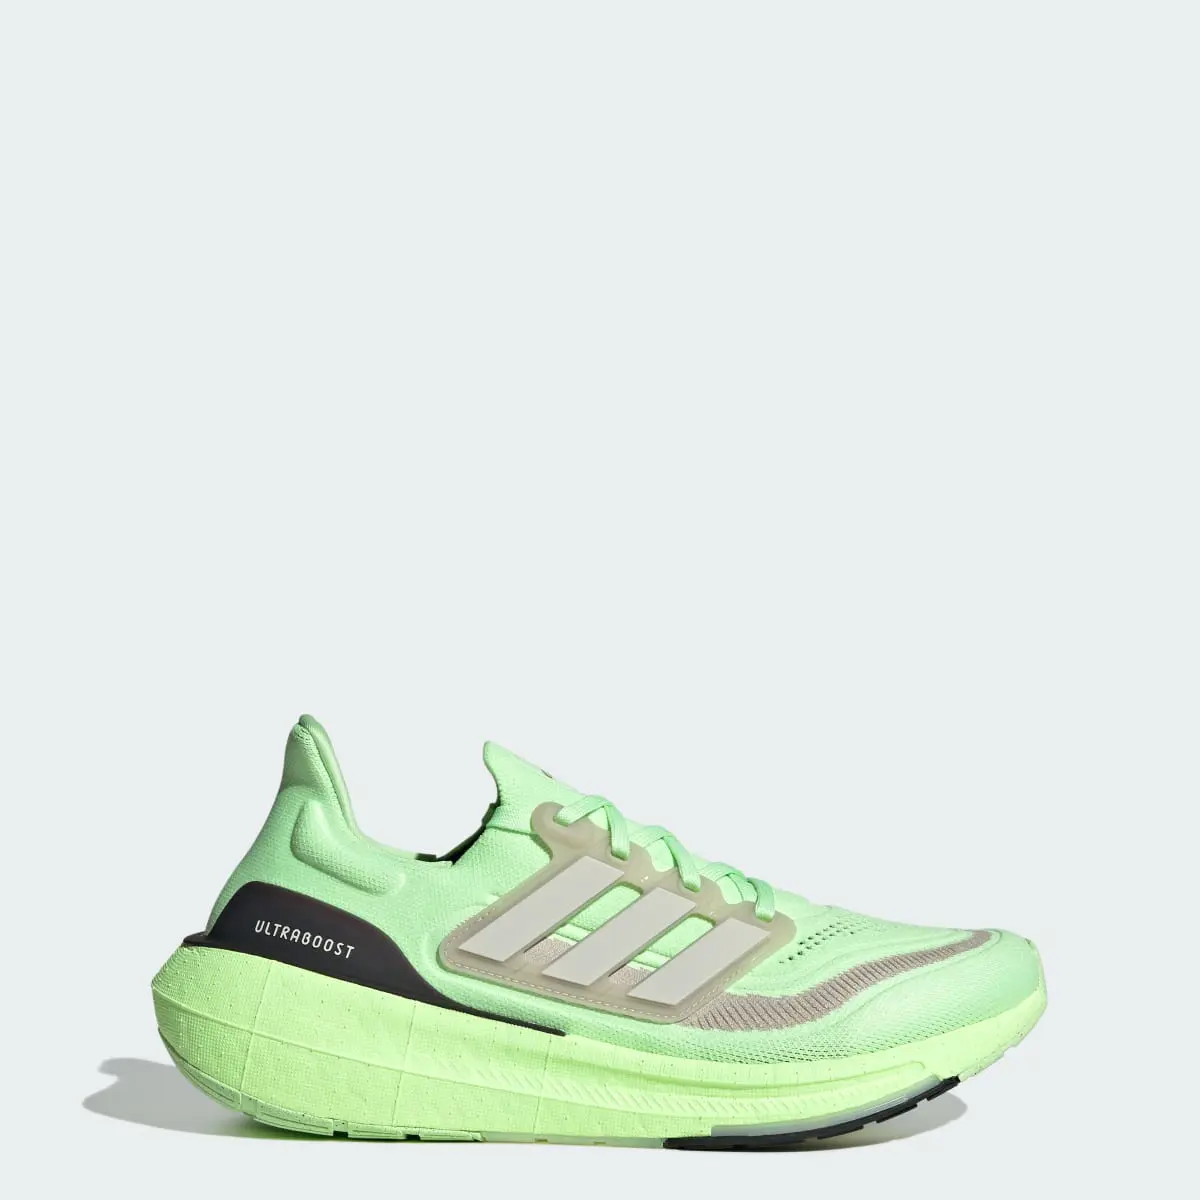 Adidas Ultraboost Light Running Shoes. 1